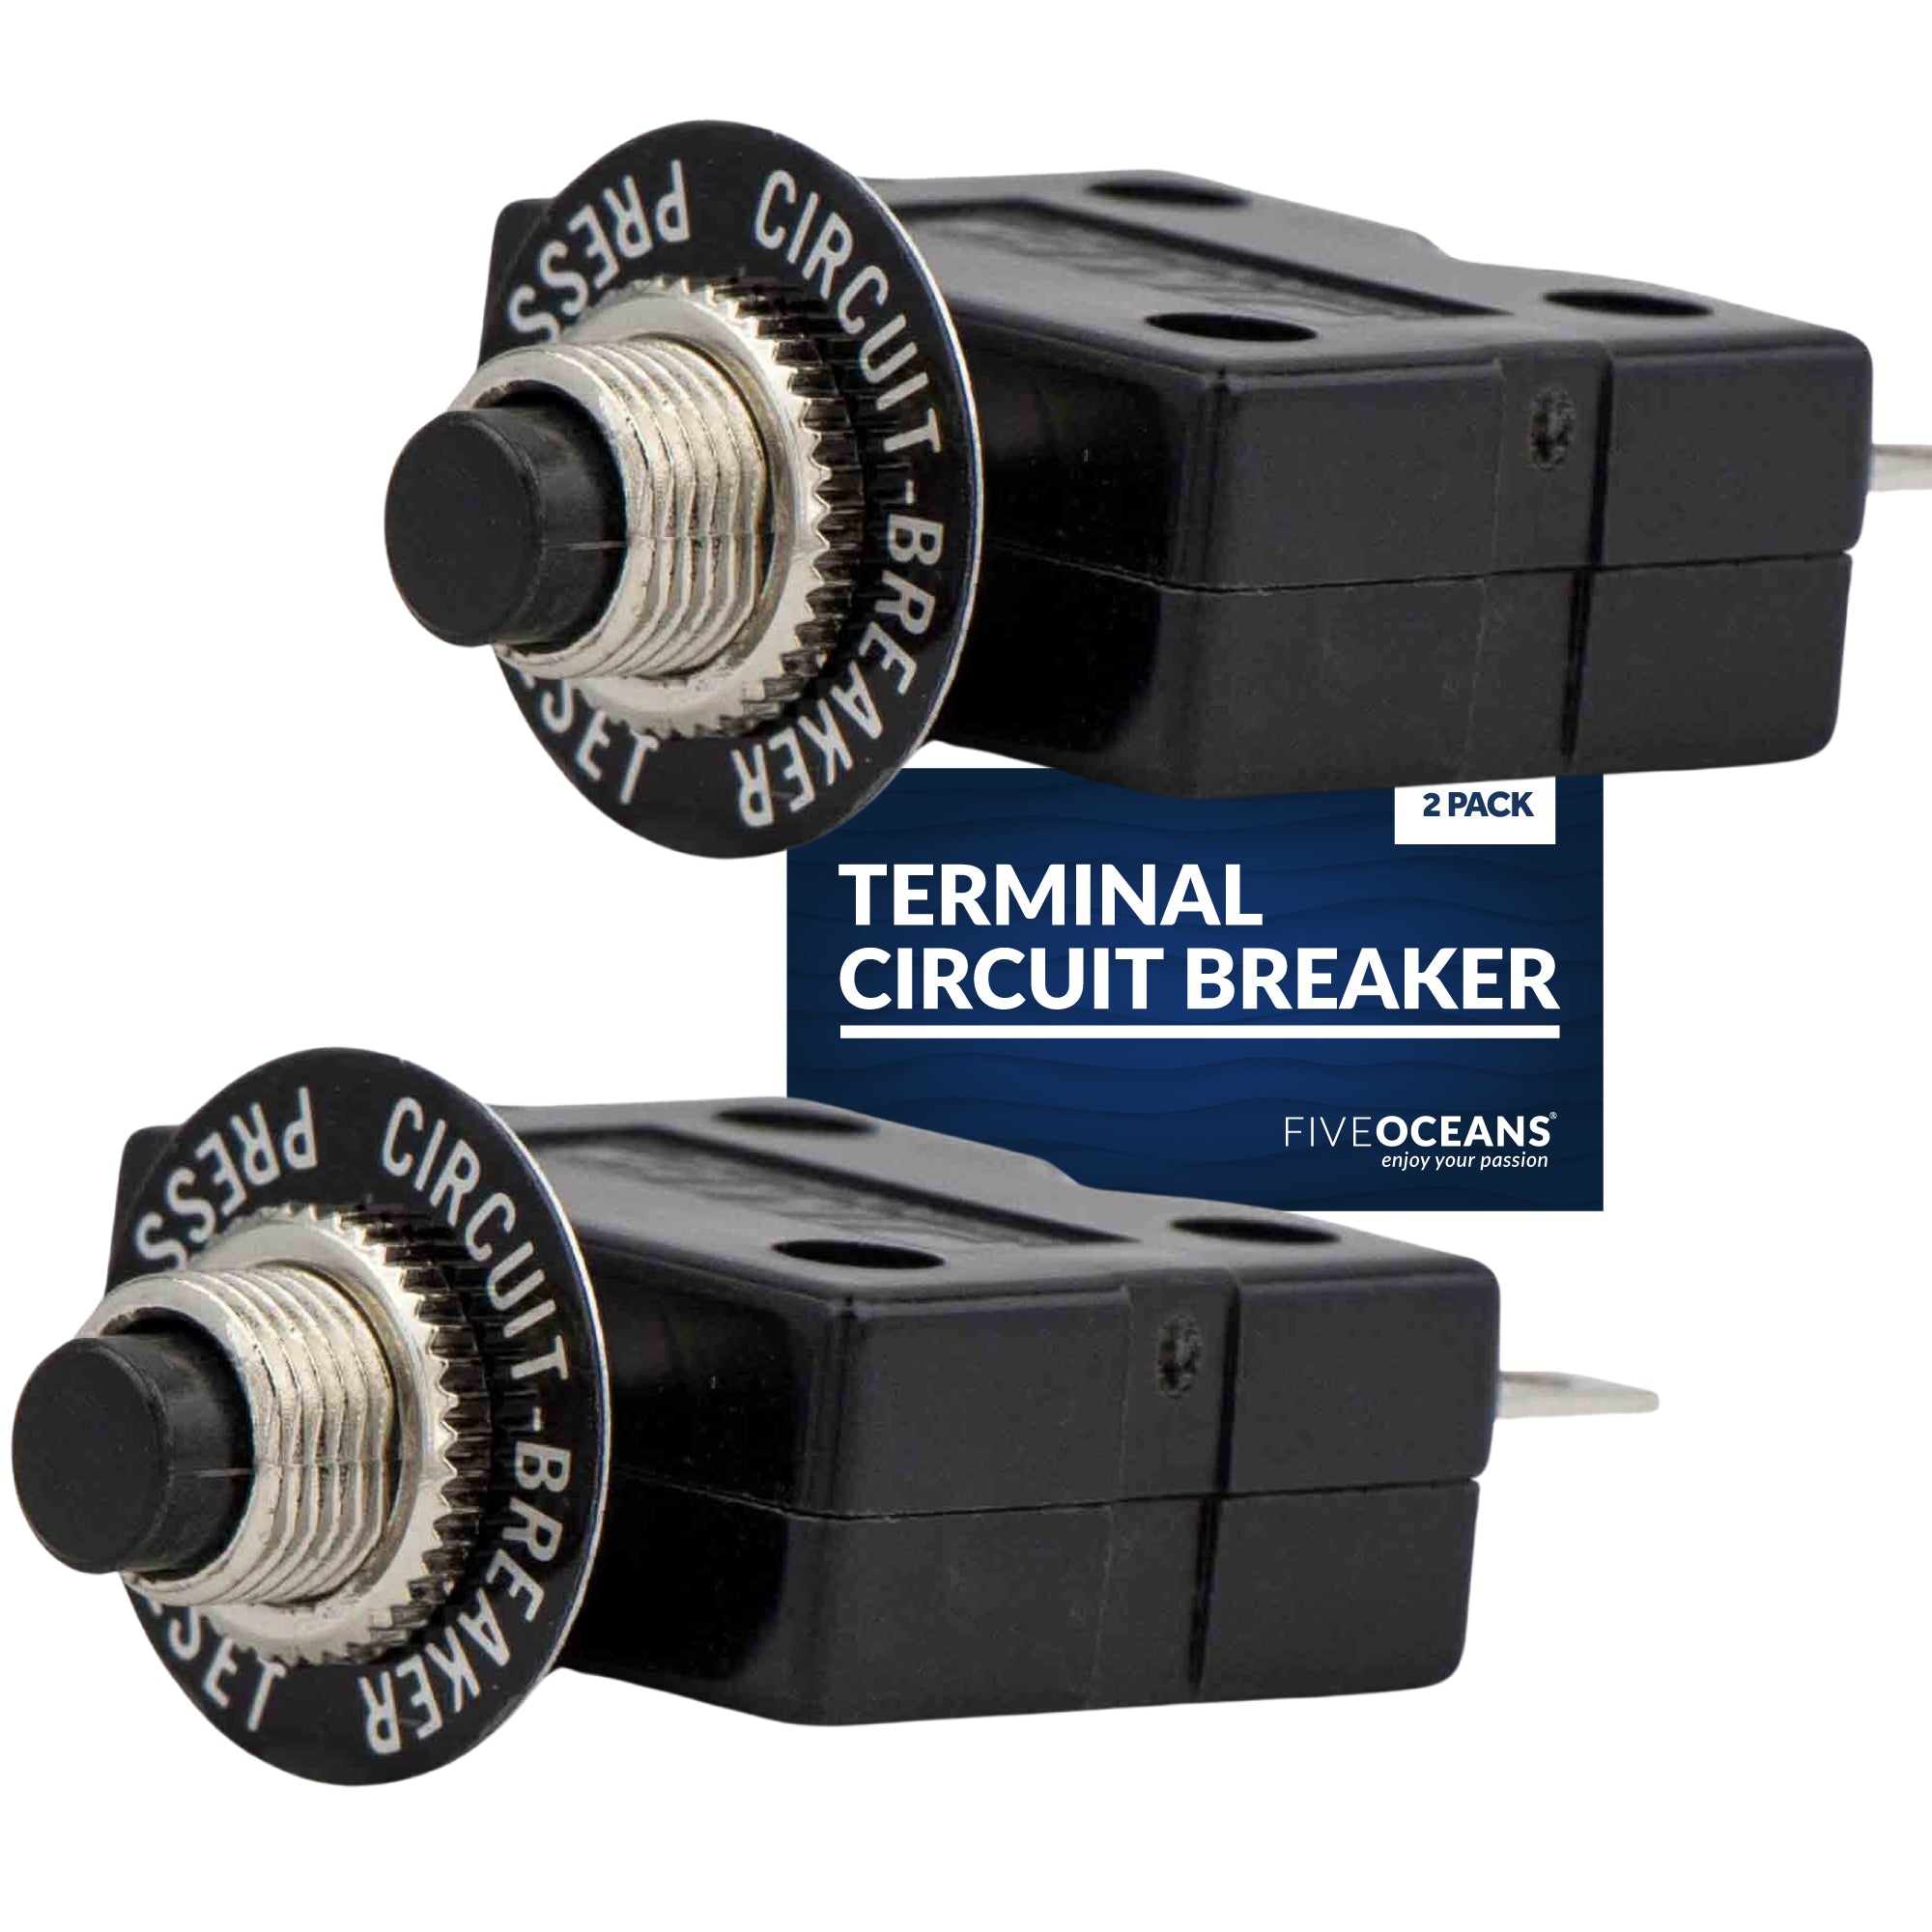 Terminal Circuit Breaker, 10 Amp 2-Pack - FO1431-M2